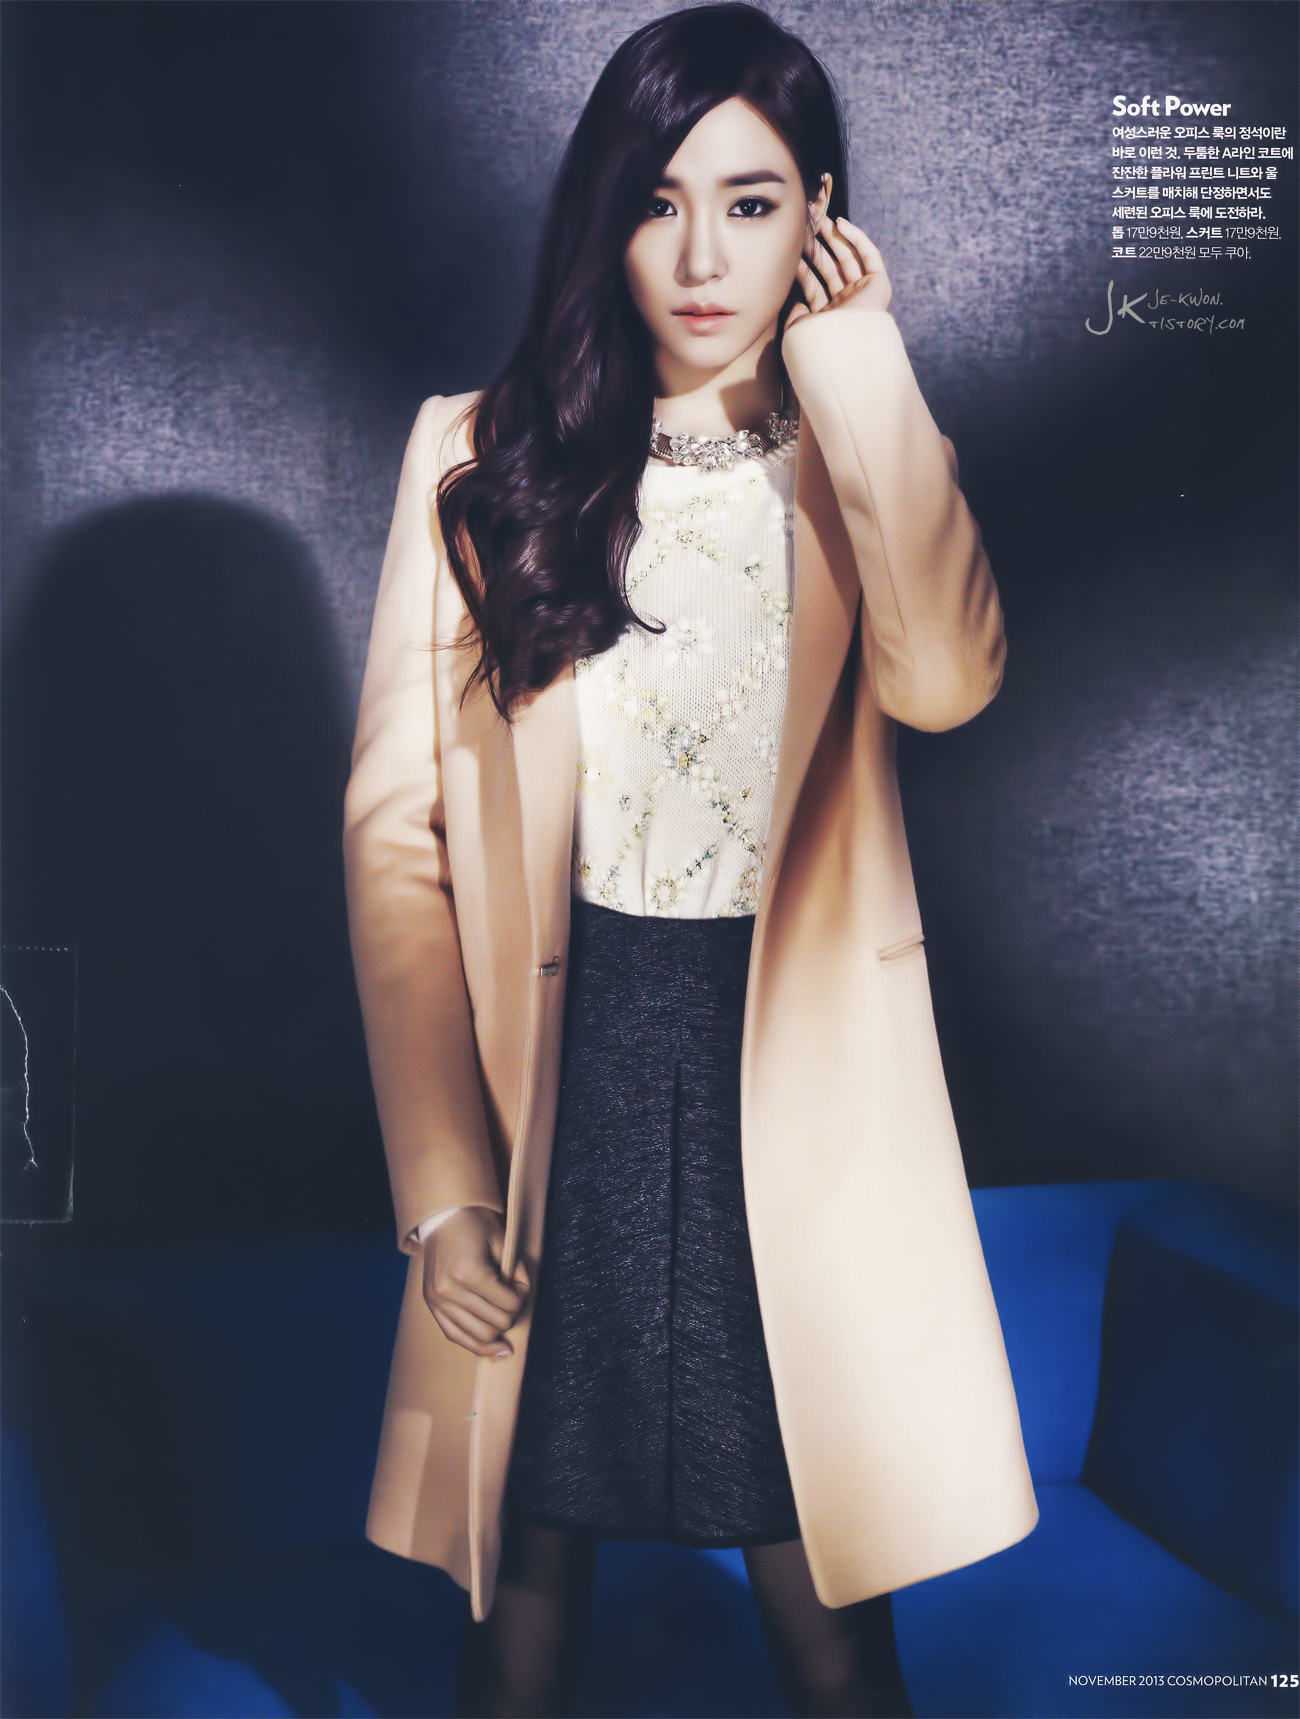 [PIC][20-10-2013]Tiffany xuất hiện trên ấn phẩm tháng 11 của tạp chí "Cosmopolitan" 25309B3A5264E2C7203E6D